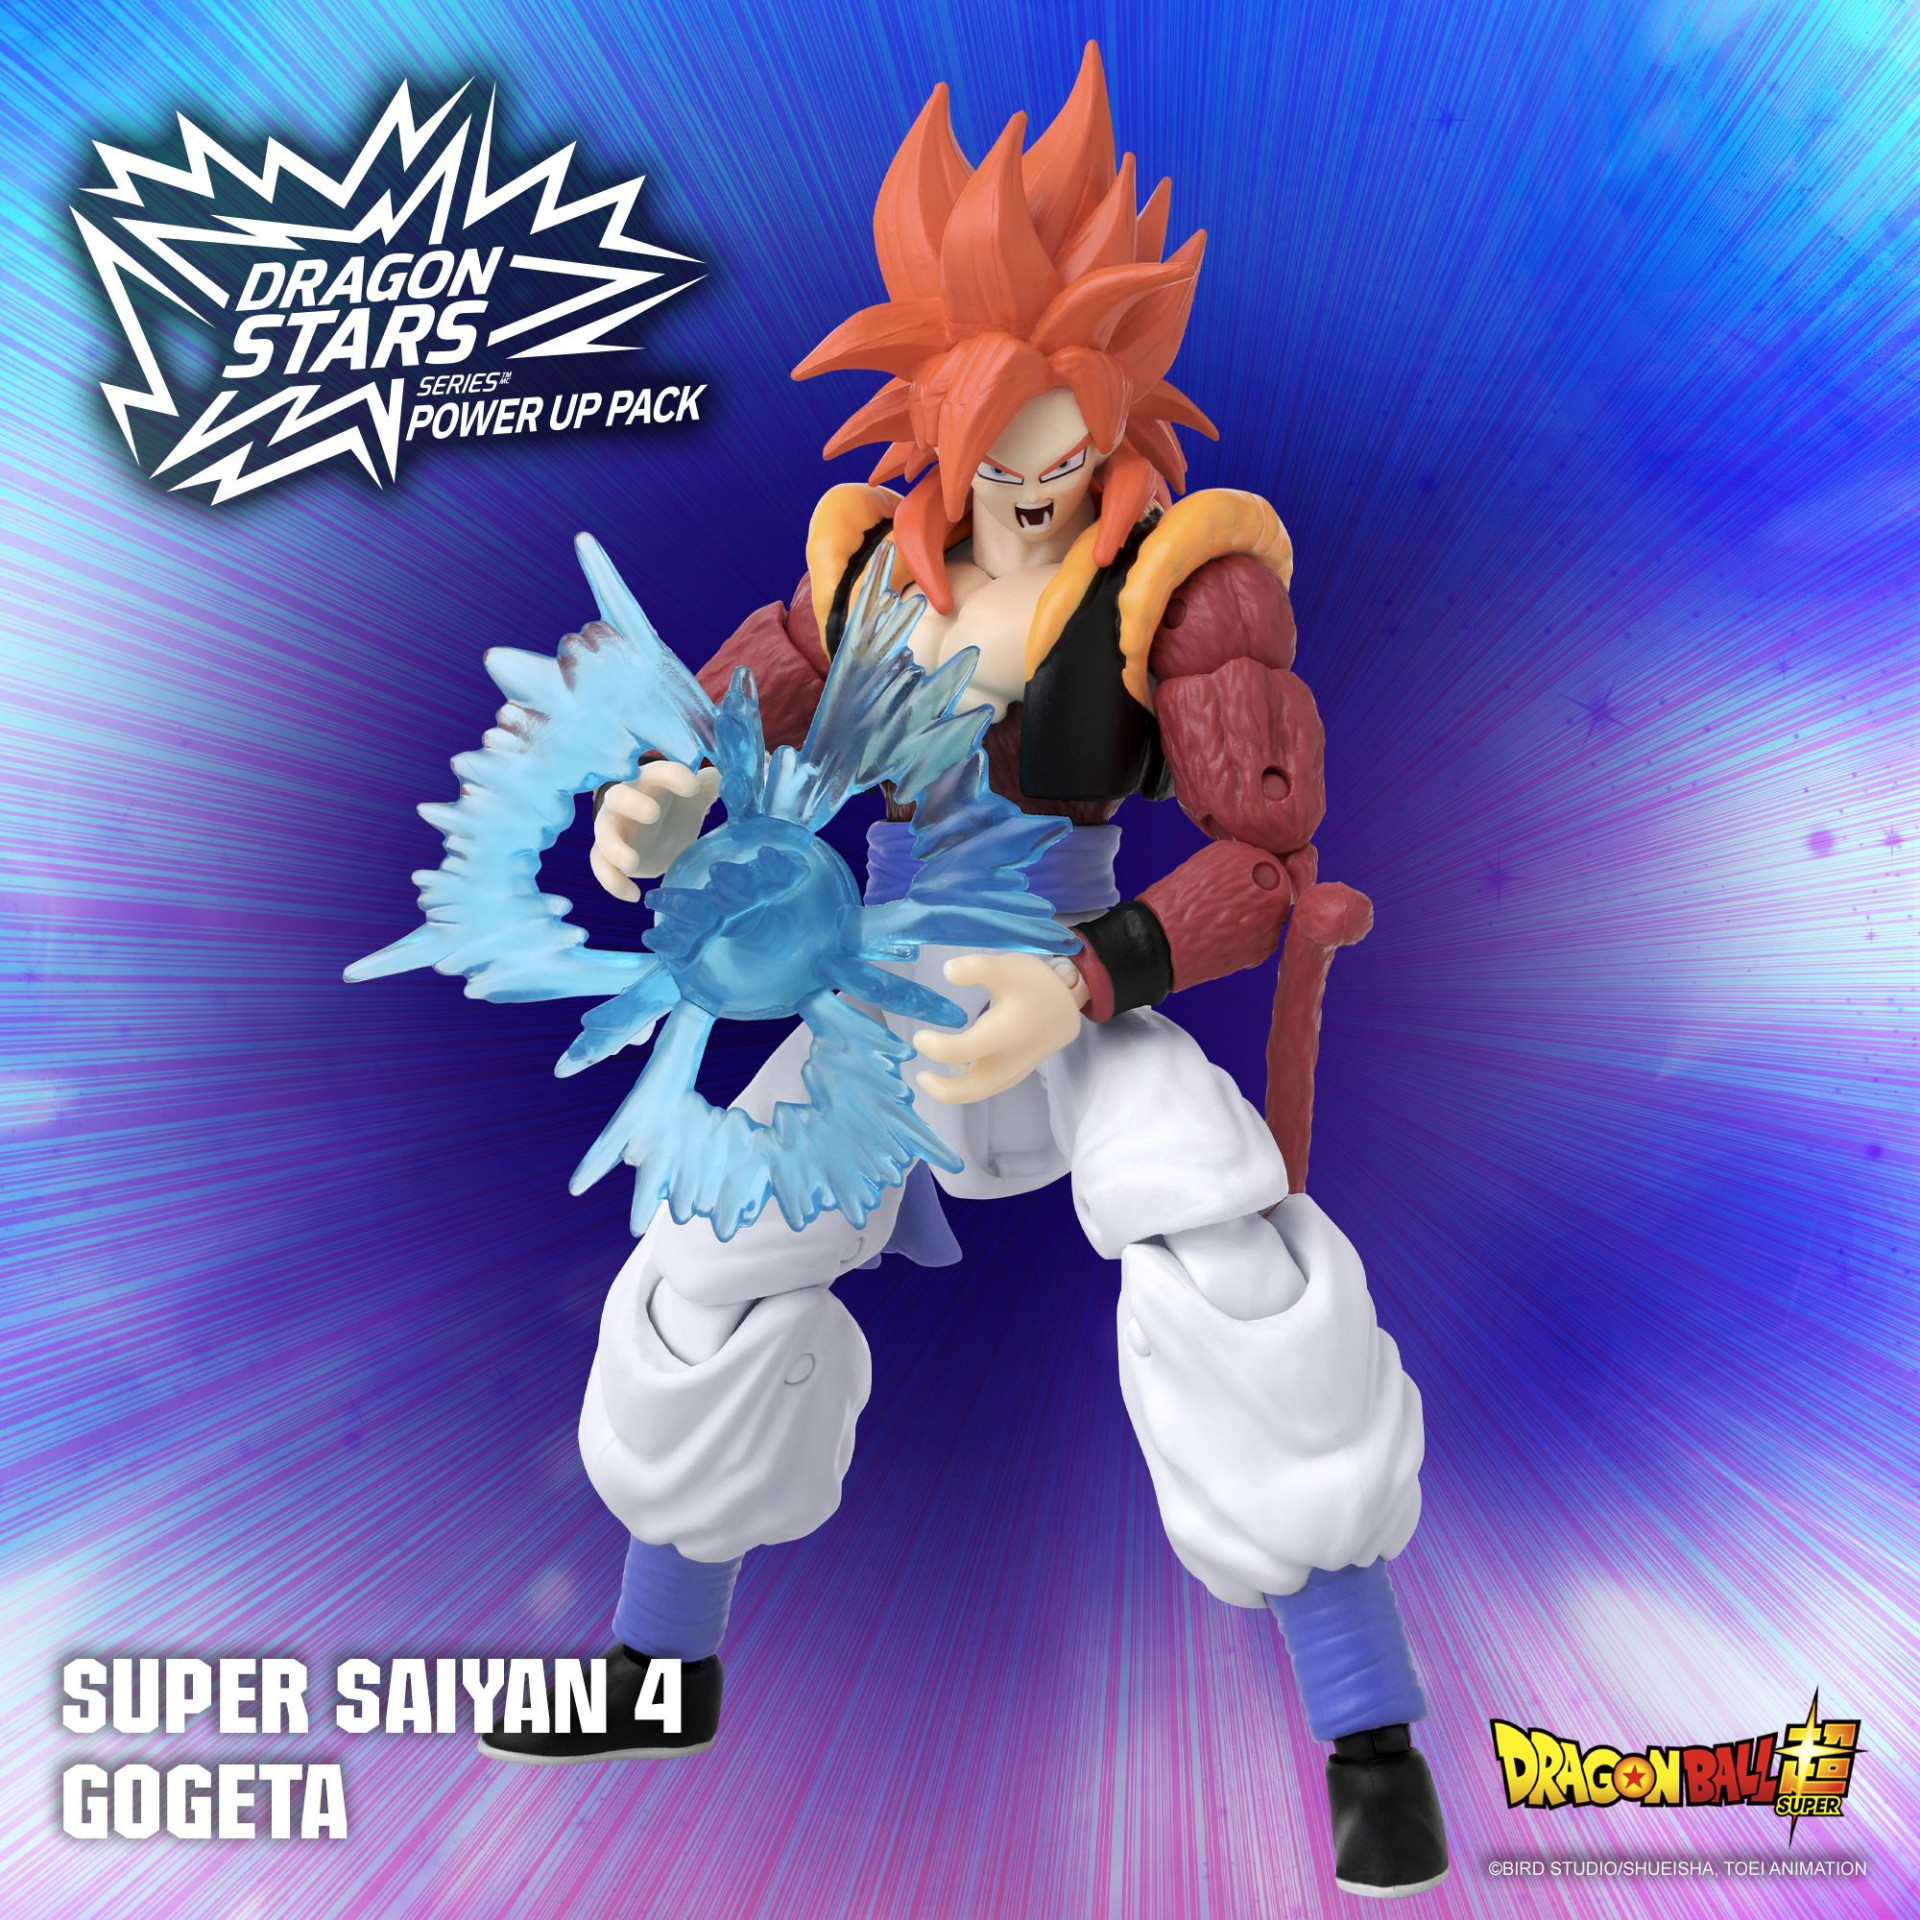 Super Saiyan 4 Gogeta est désormais disponible dans le Power Up Pack Dragon Stars Series !